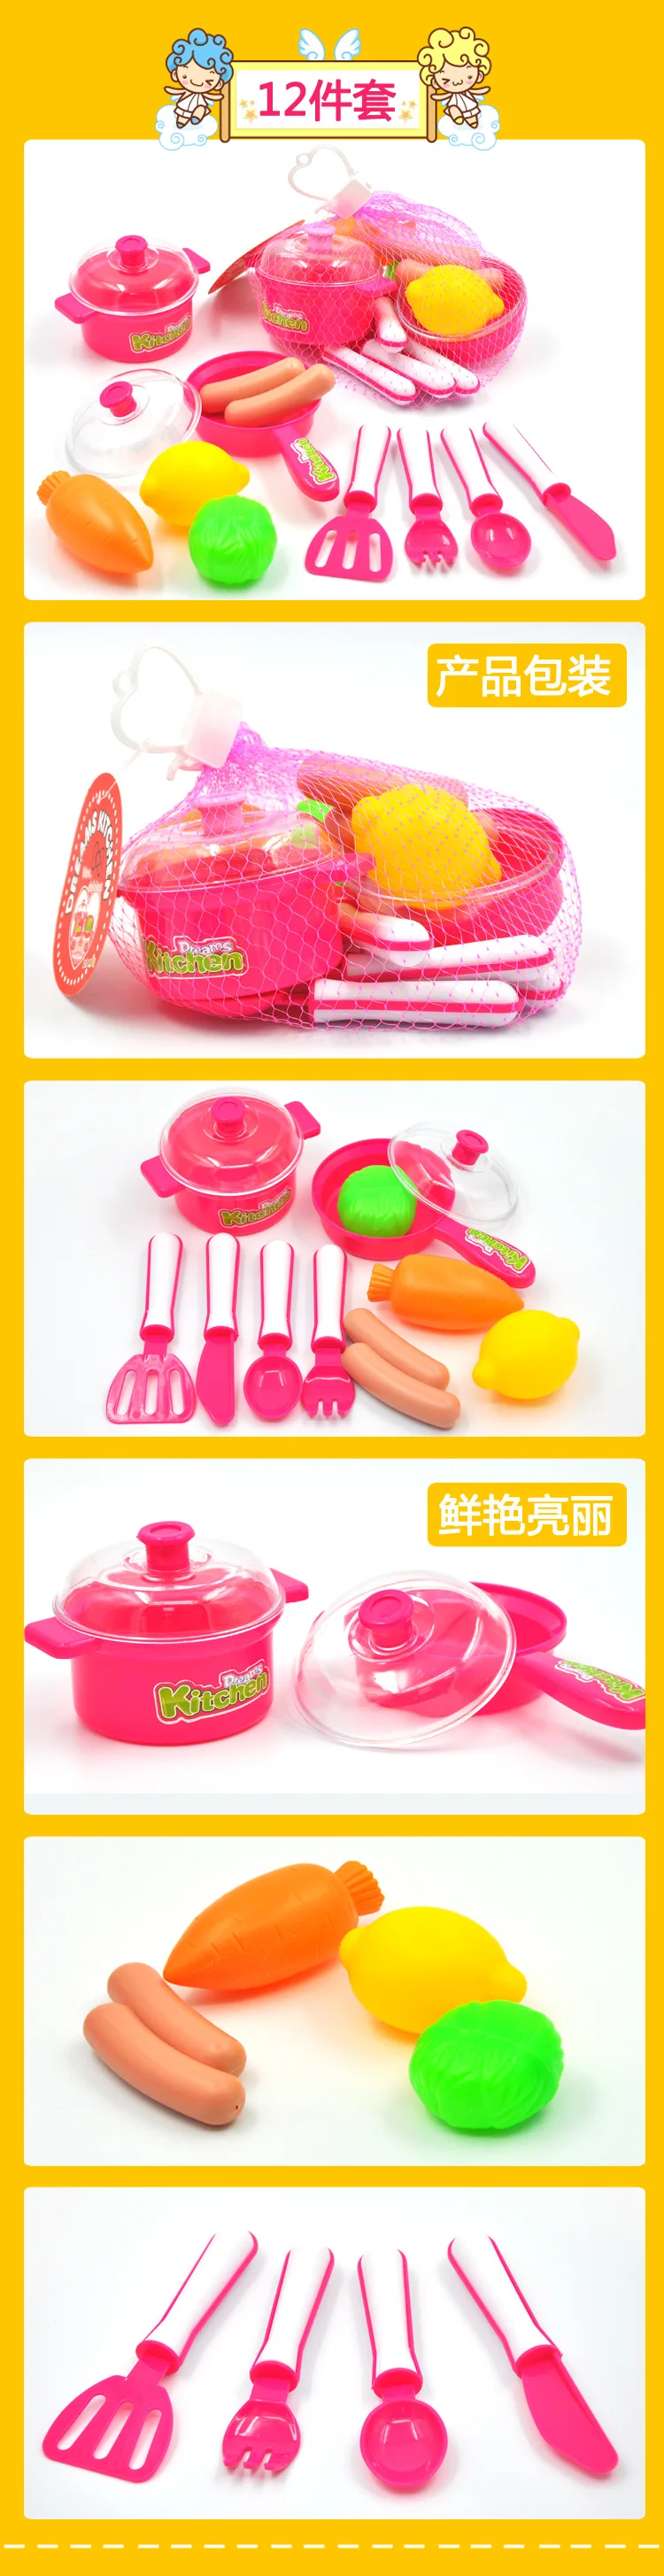 Развивающие игрушки для детей играть дома игрушки набор моделирование посуда чайники фрукты и овощи Ролевые игры